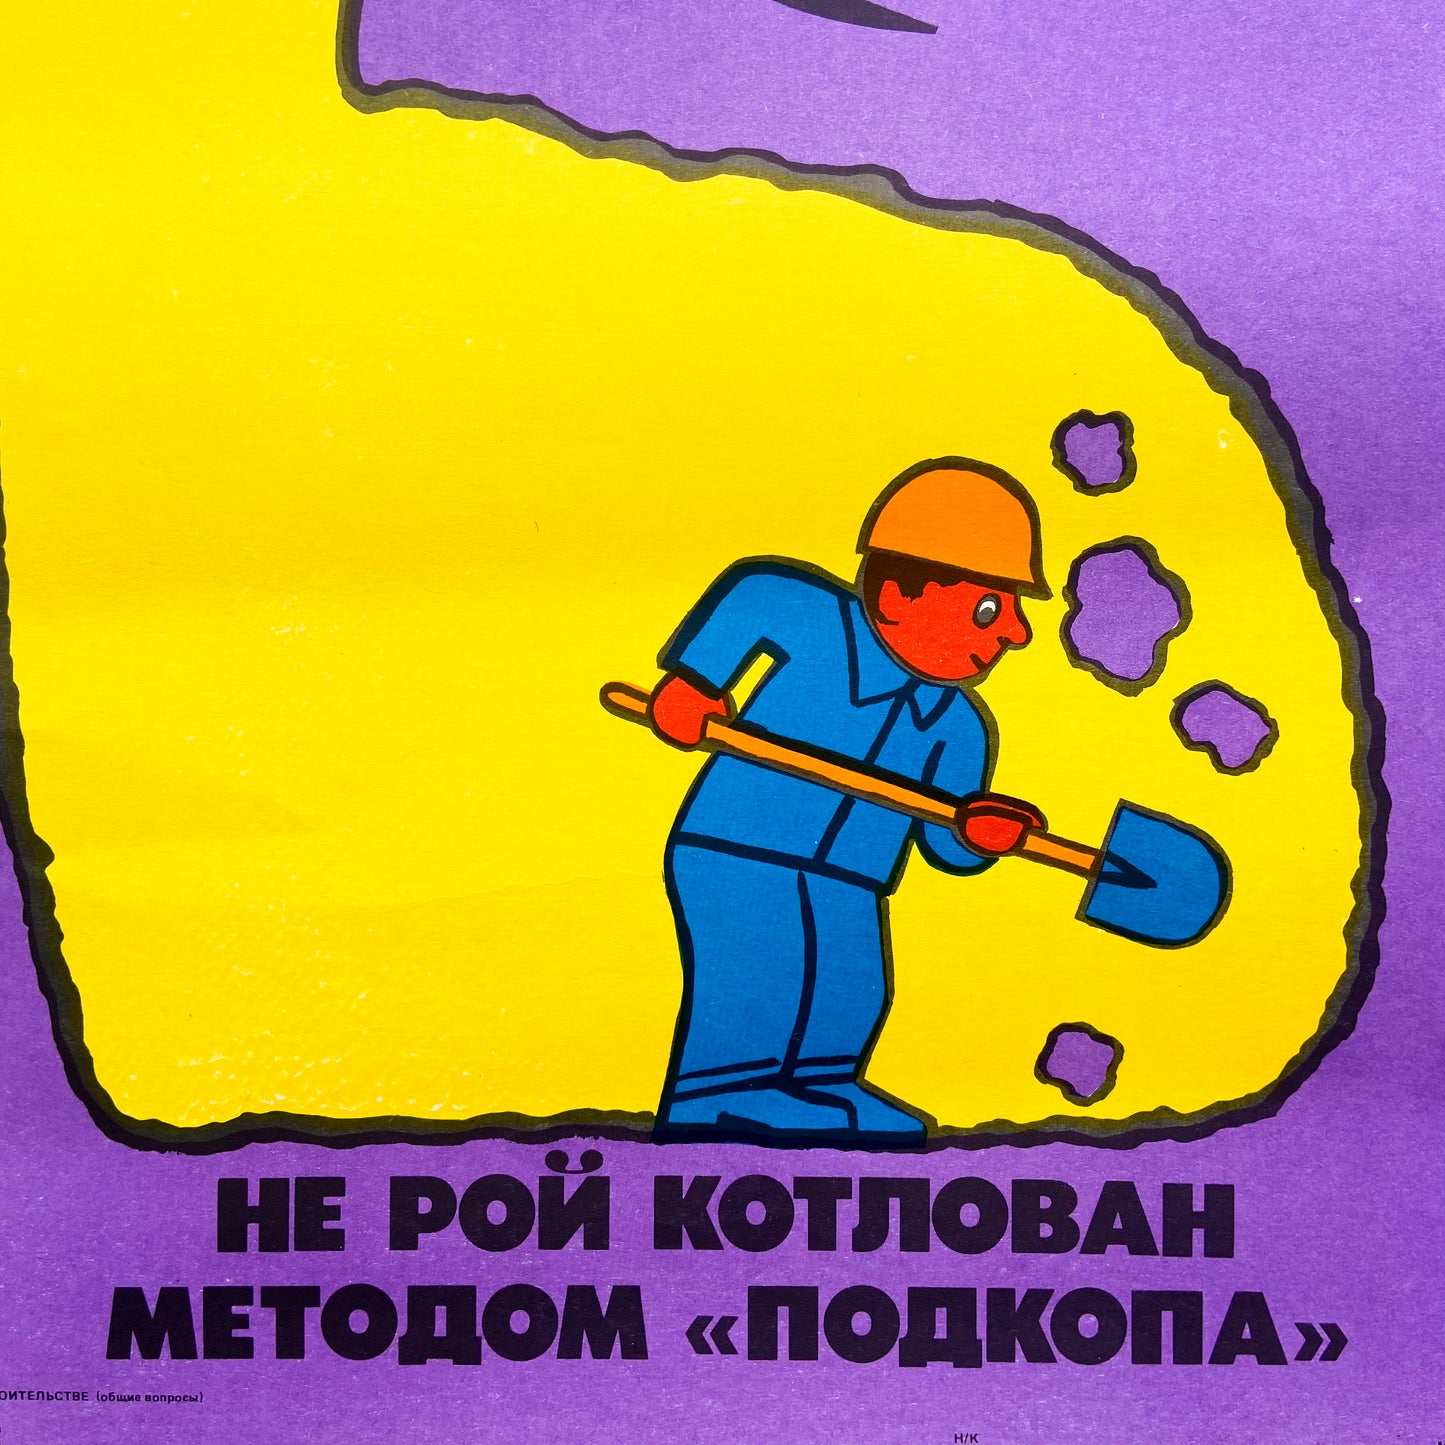 1989 Soviet Work Safety Poster #P1188 - 17" x 23"